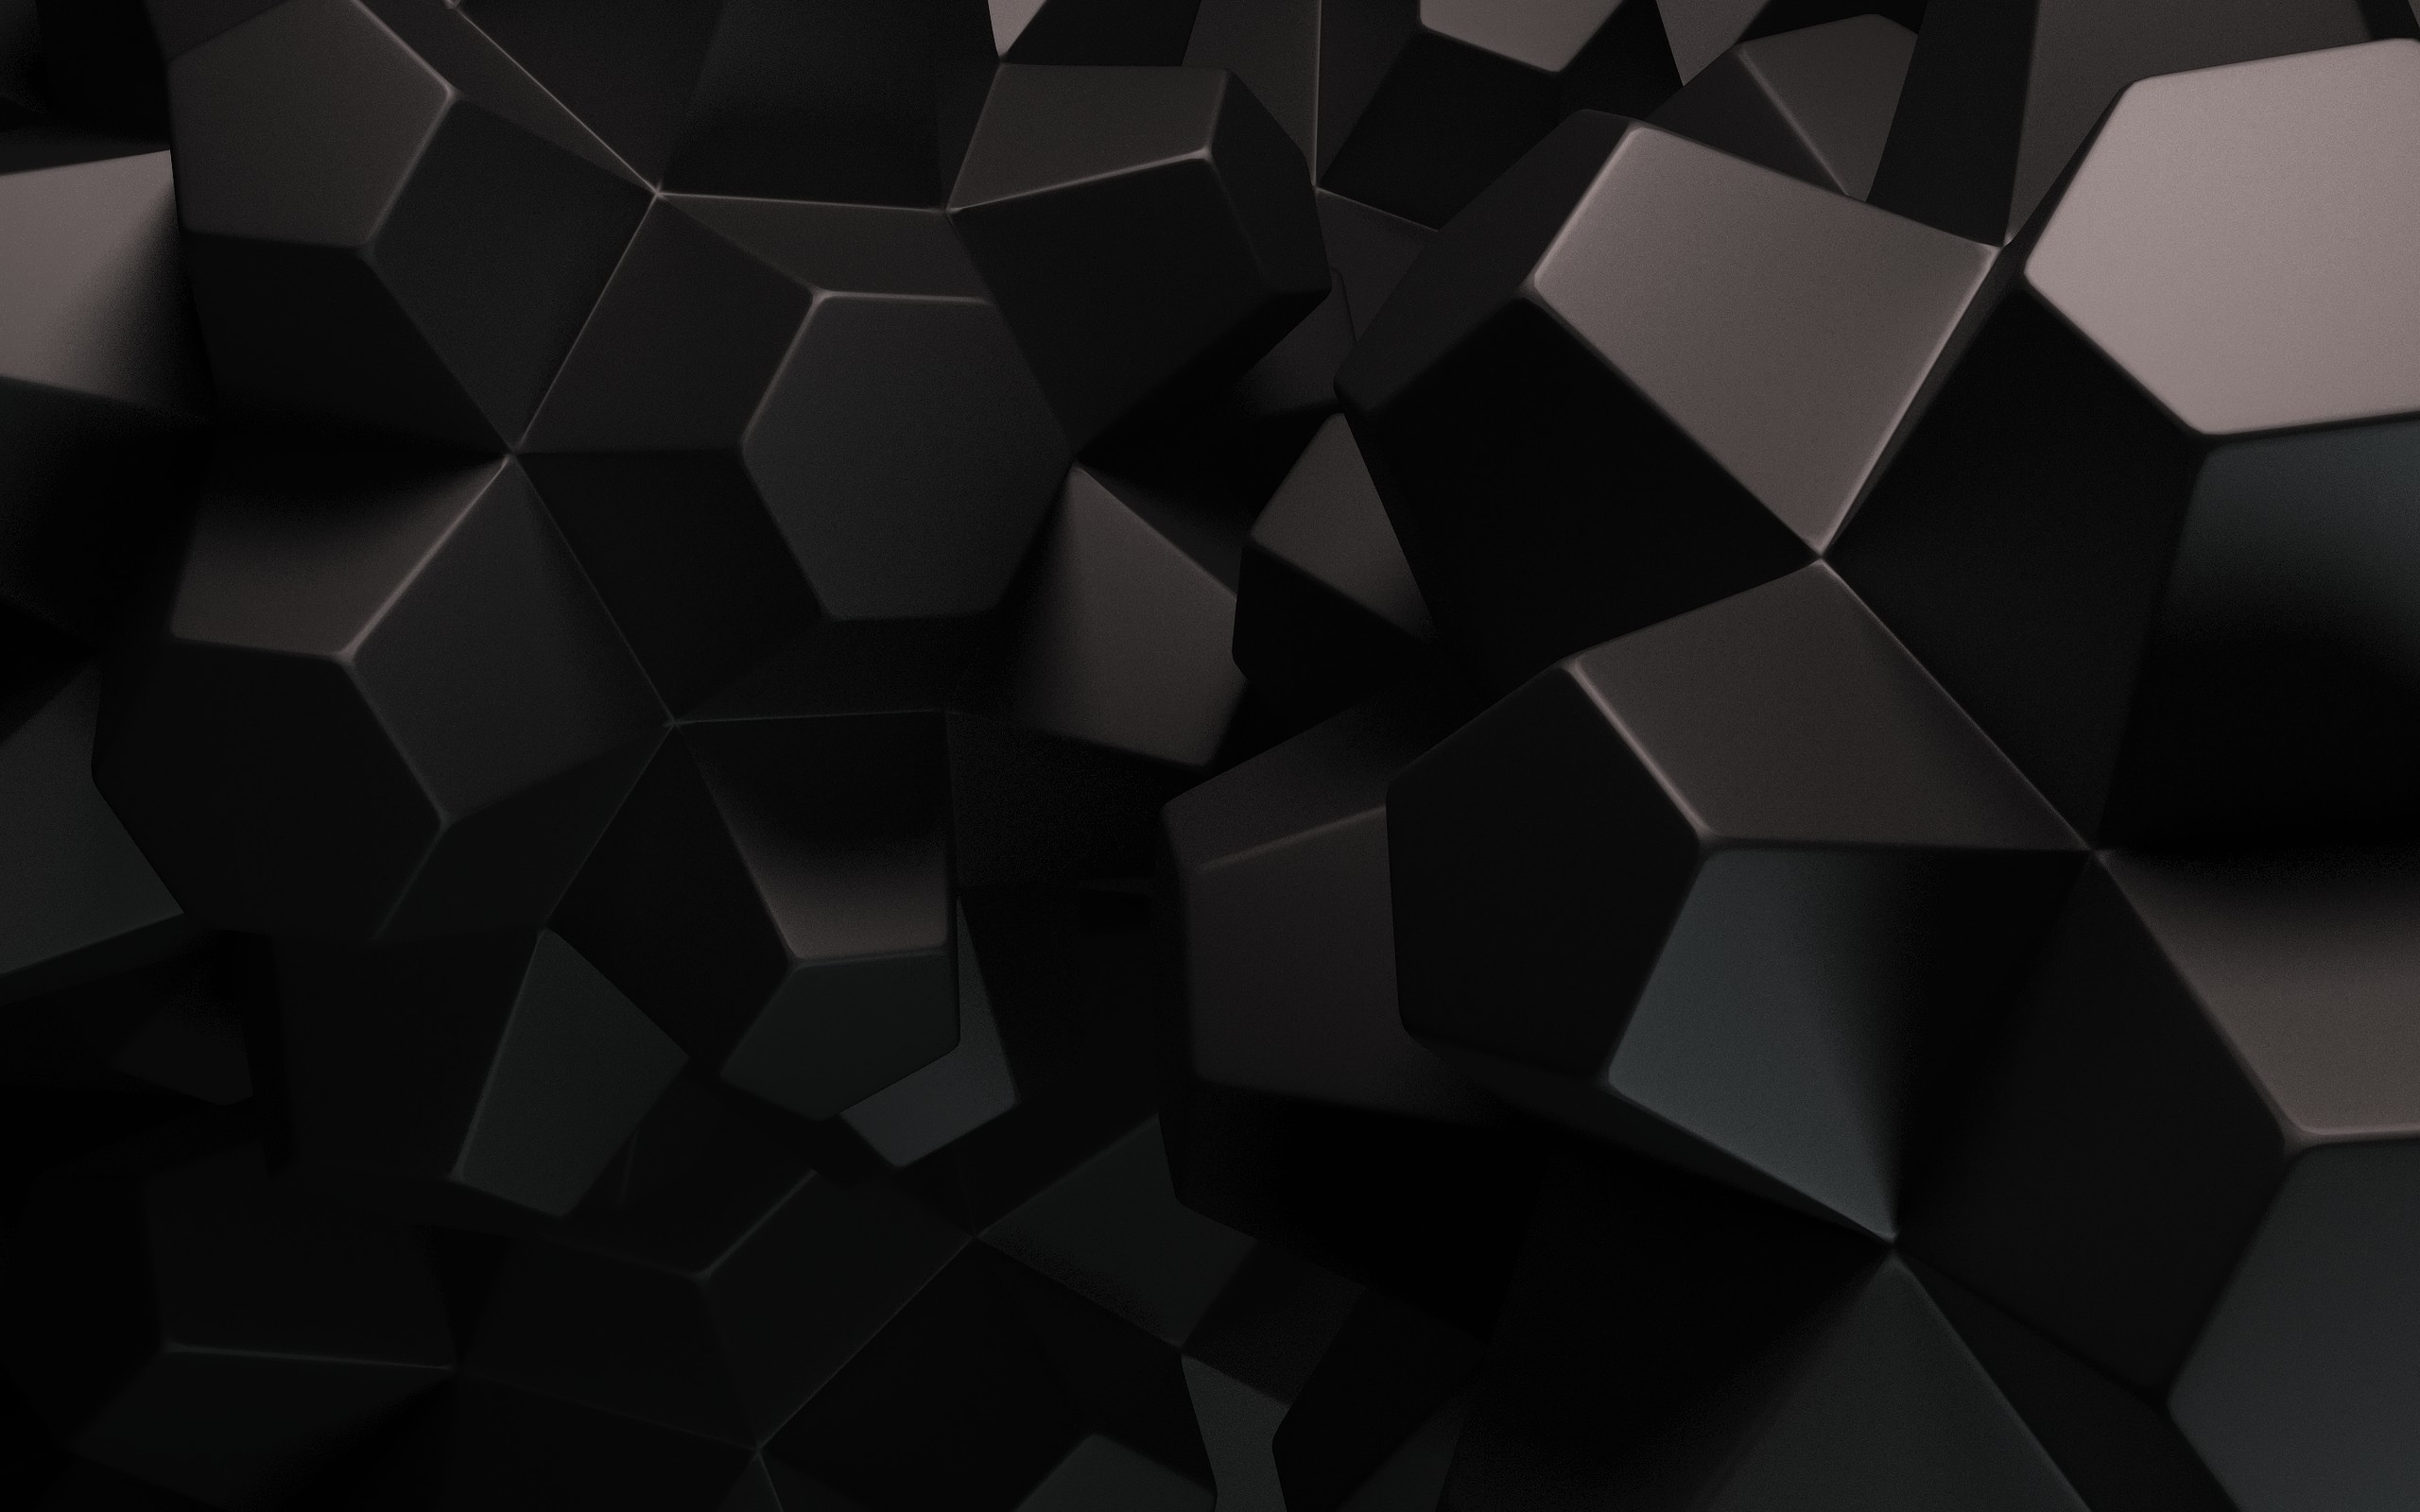 2560x1600 Black Desktop Wallpaper Design with id 3997 - Desktop ... Abstract Dark Desktop  Background ...